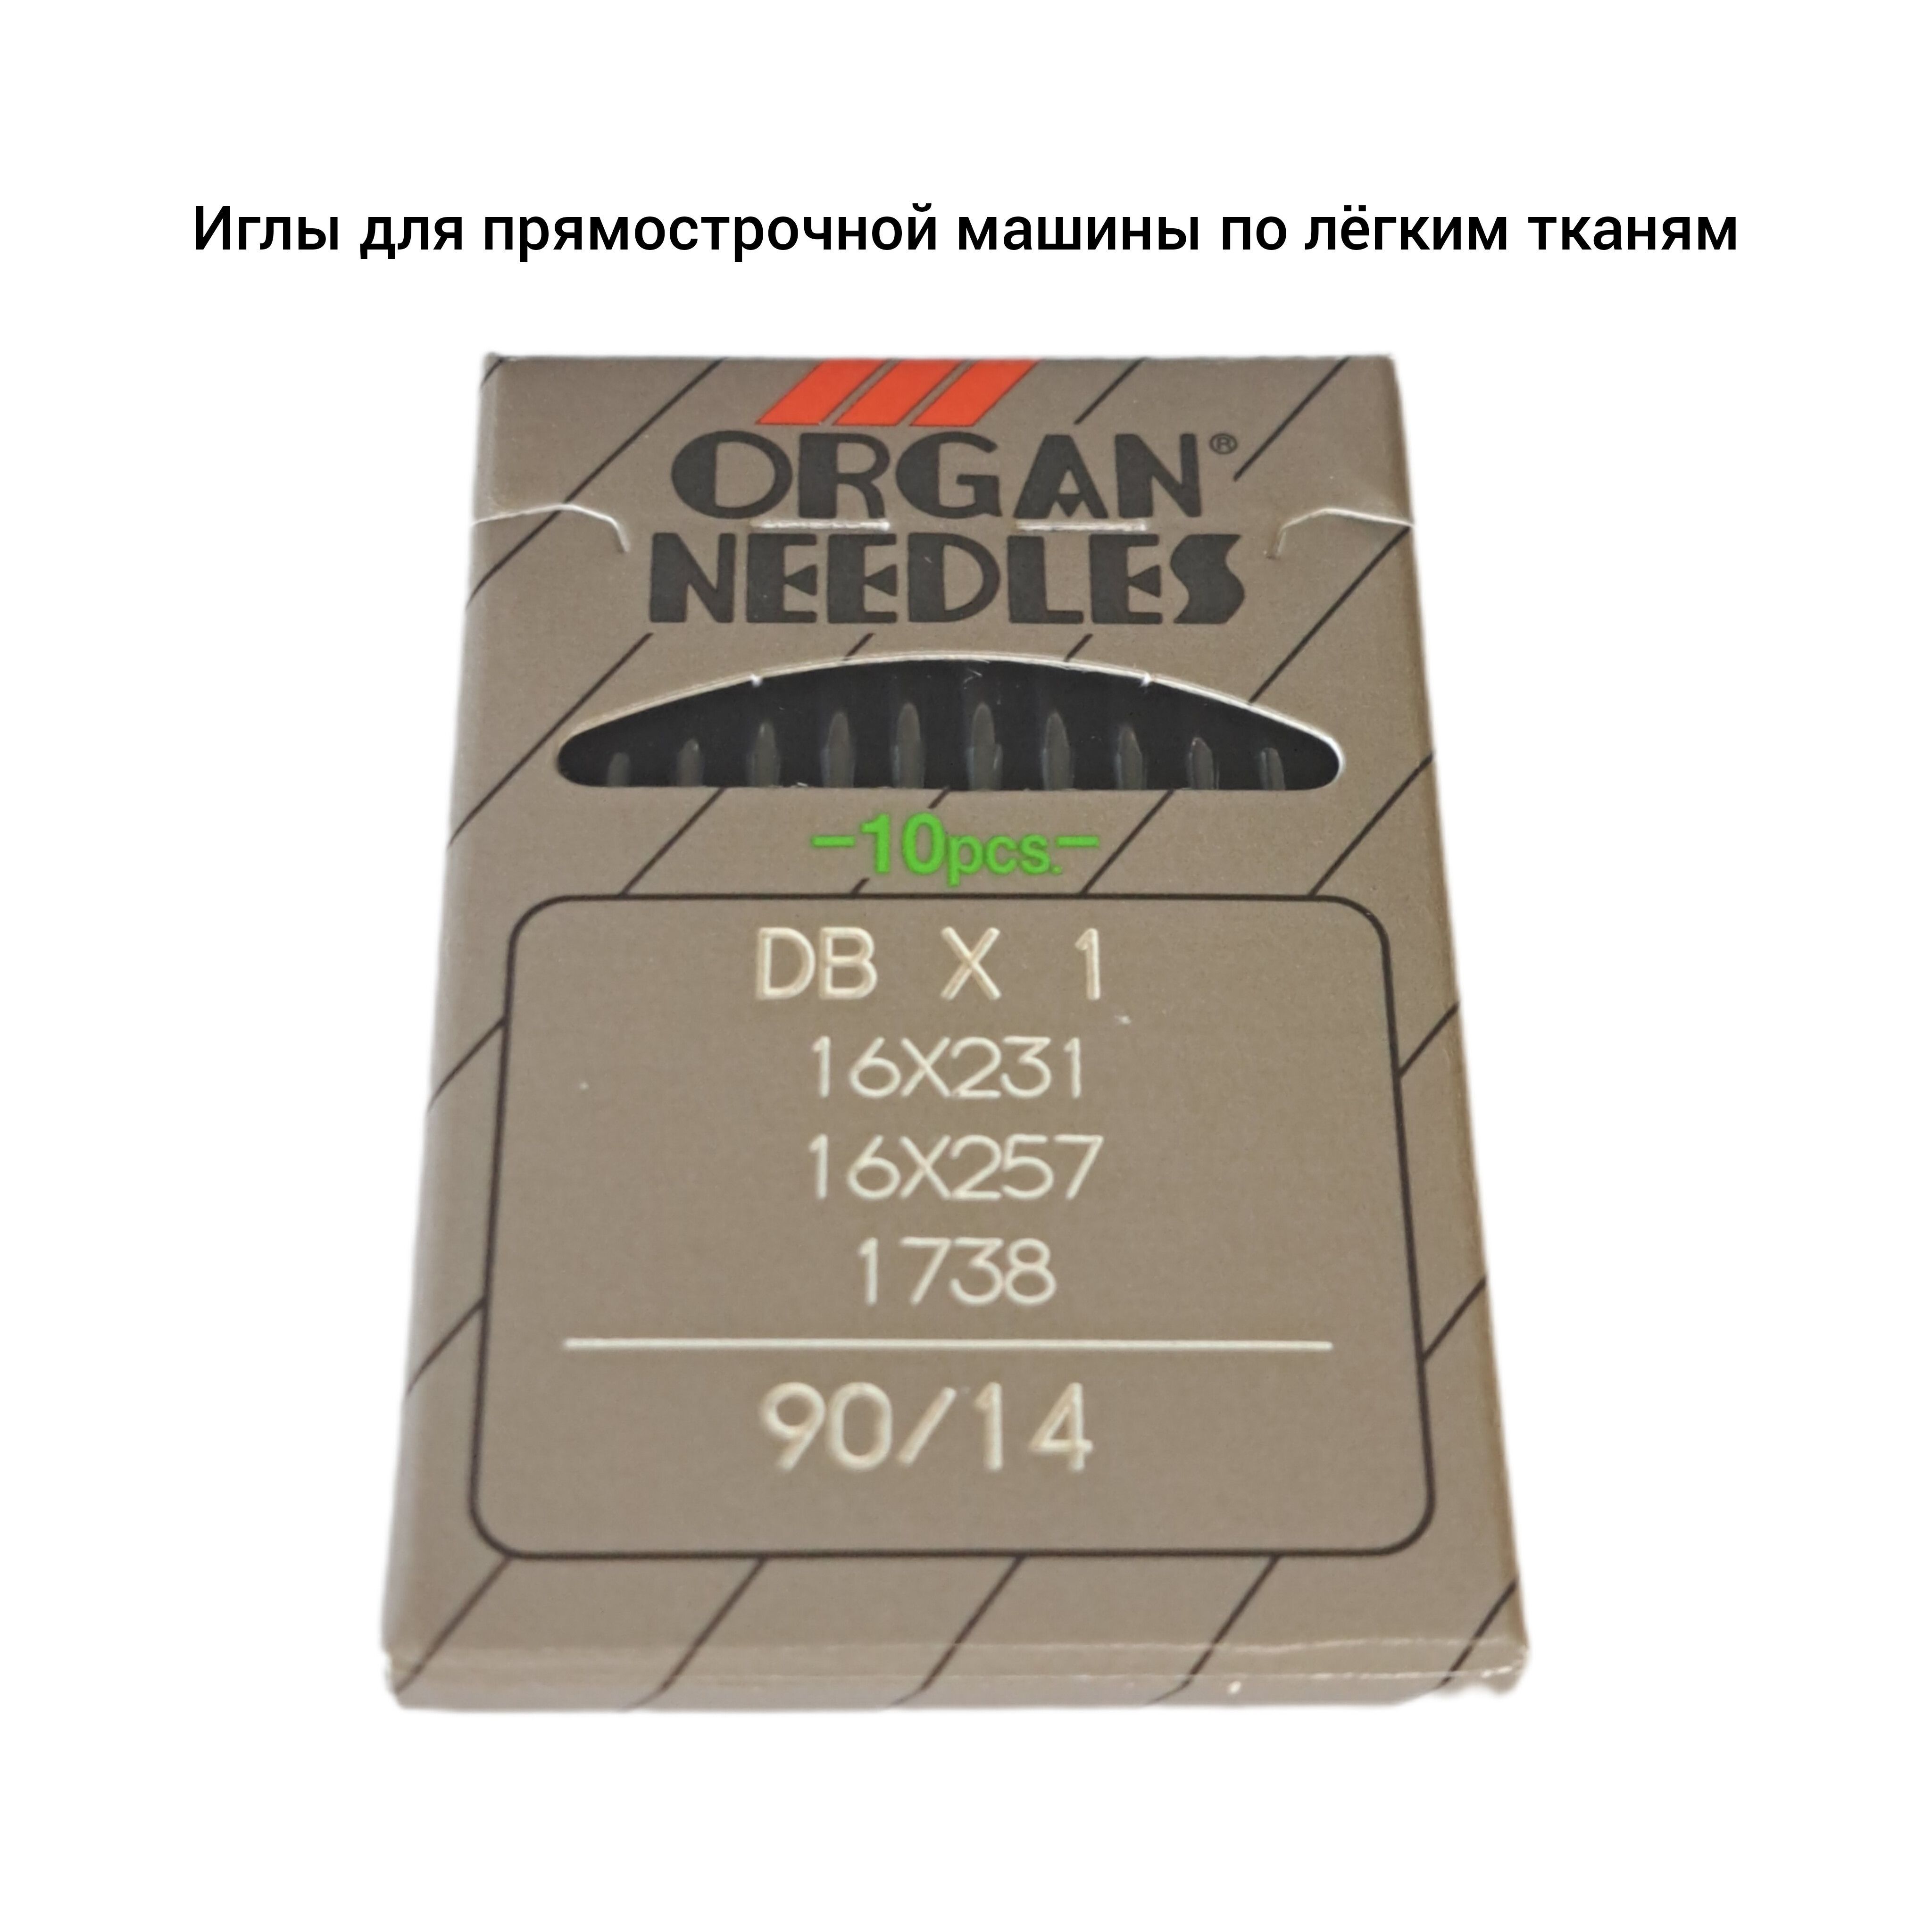 Универсальная Игла Organ Needles DBx1 № 90/14